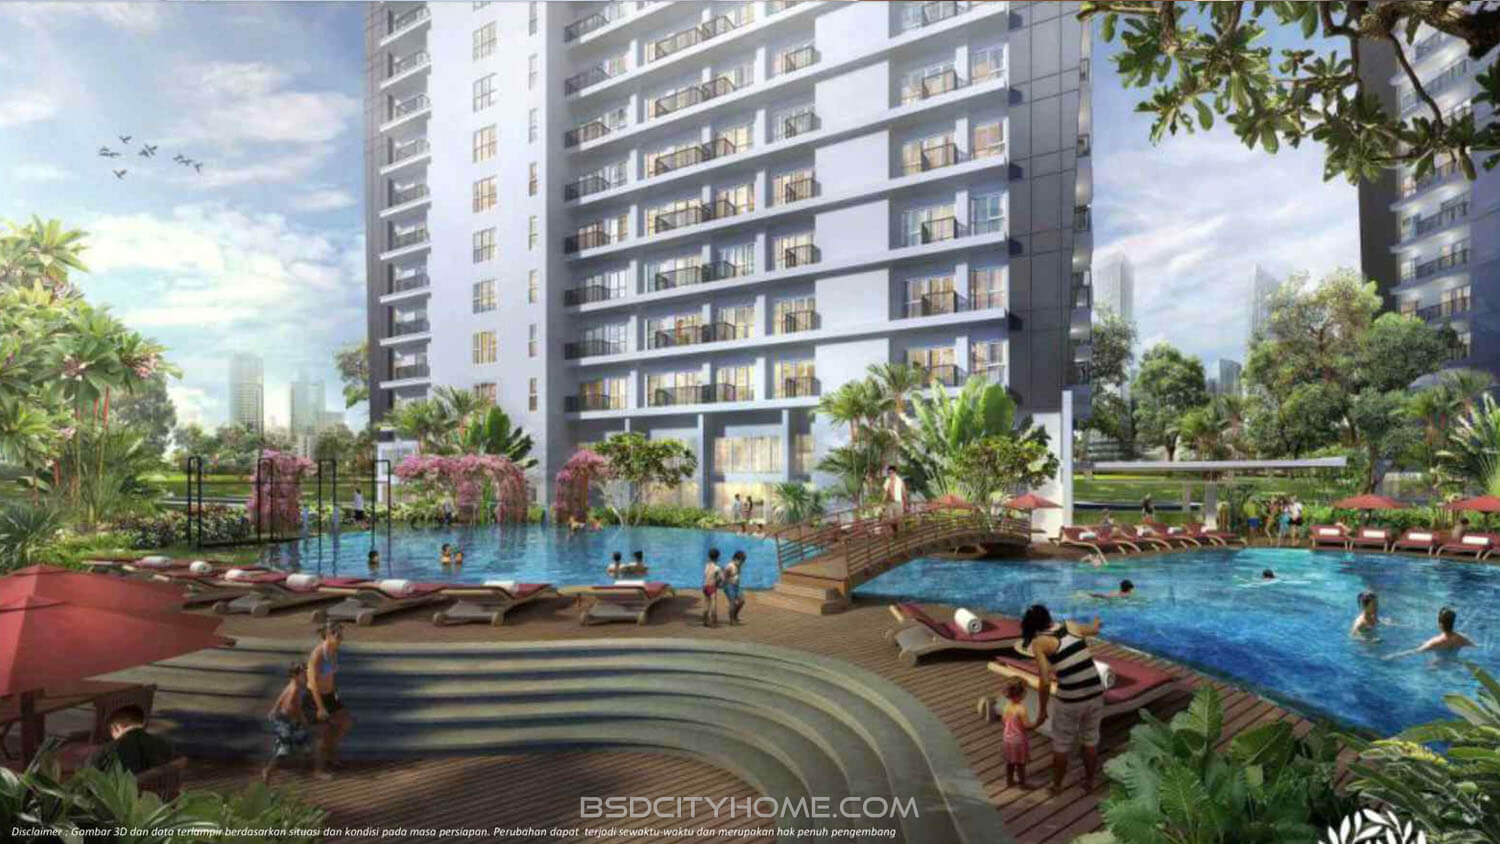 Casa de Parco BSD Apartment - Swimming Pool